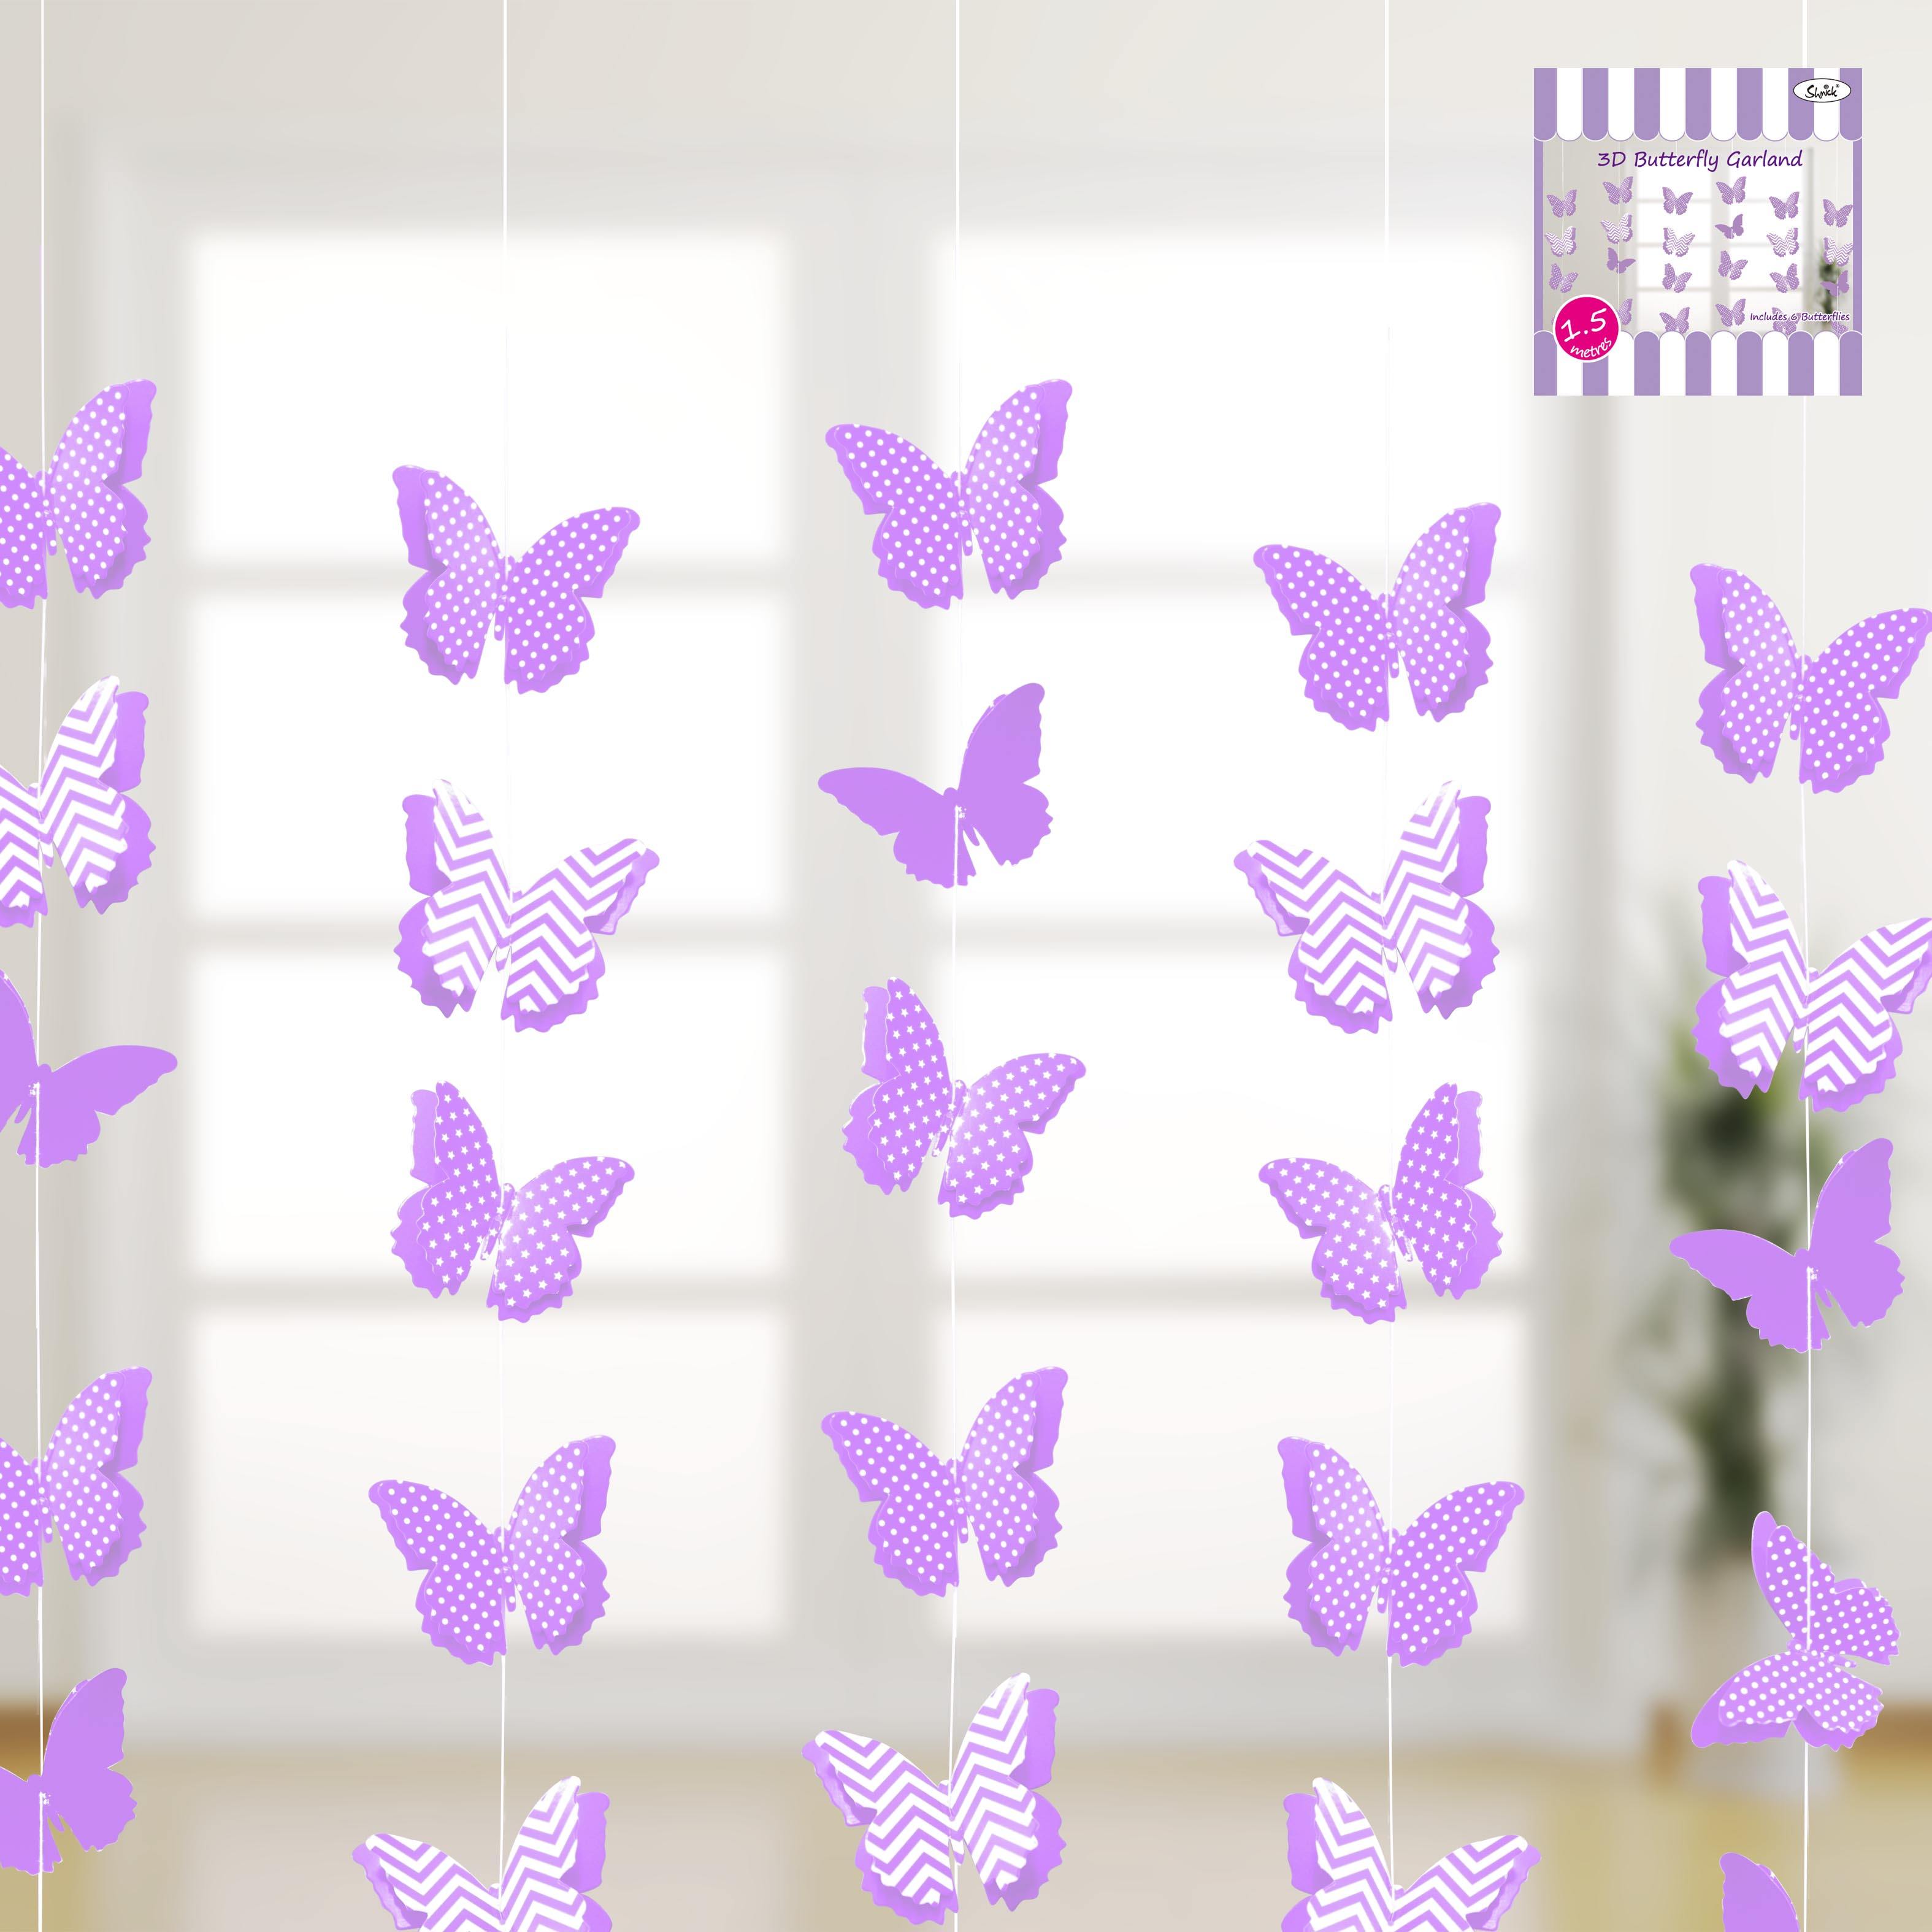 Purple 3D Butterflies Garland - 1.5m - The Base Warehouse